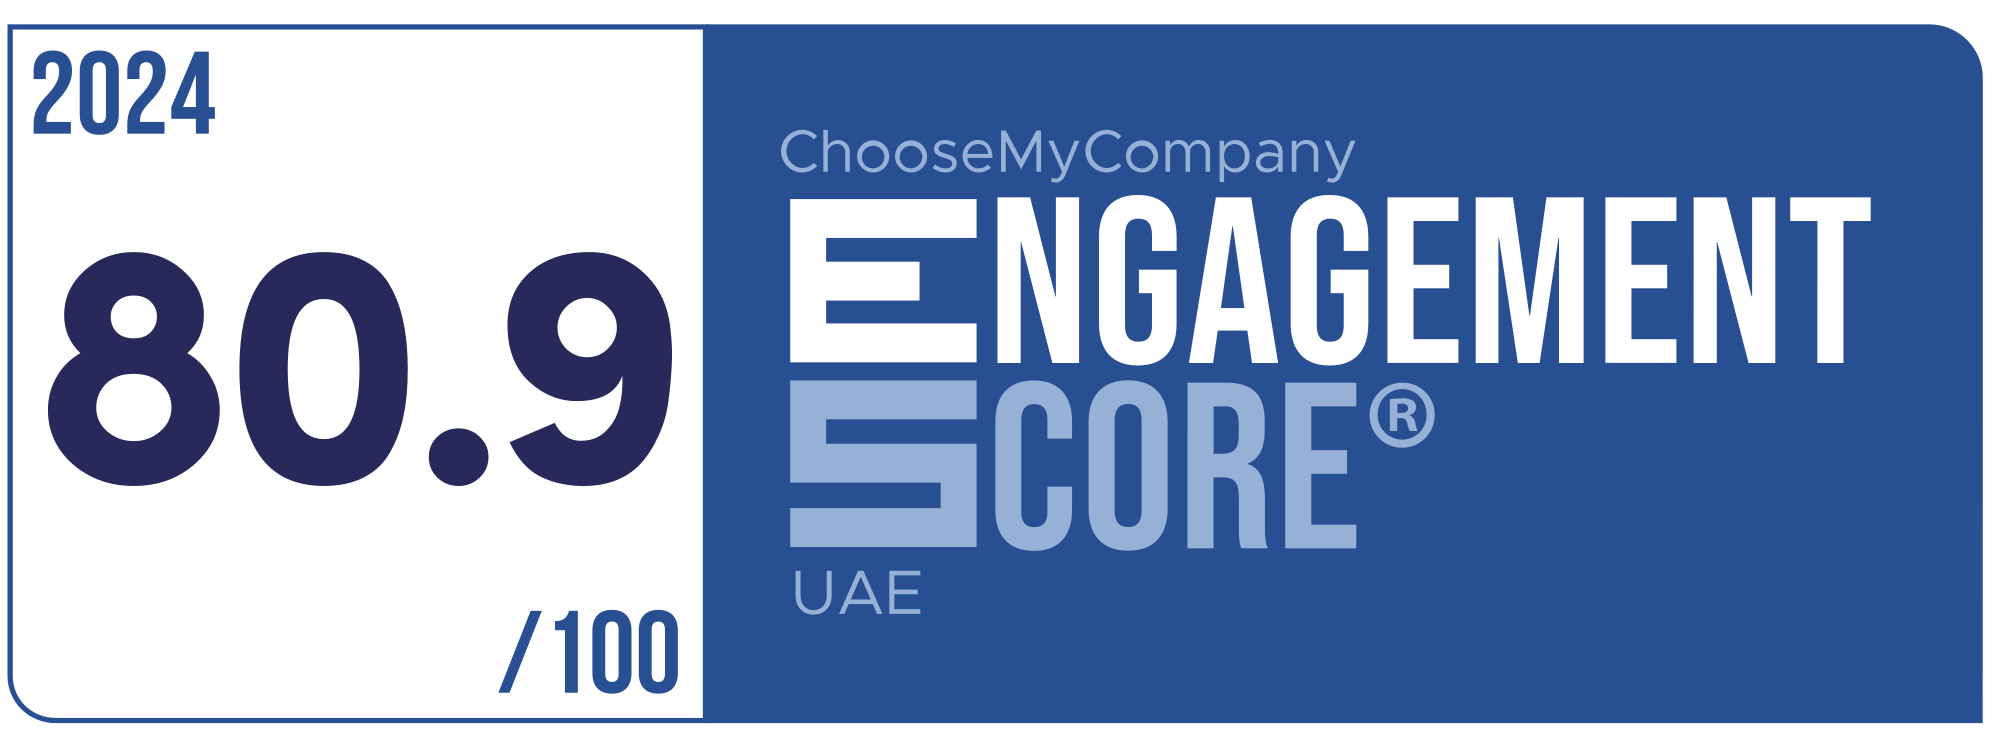 Label Engagement Score 2024 UAE